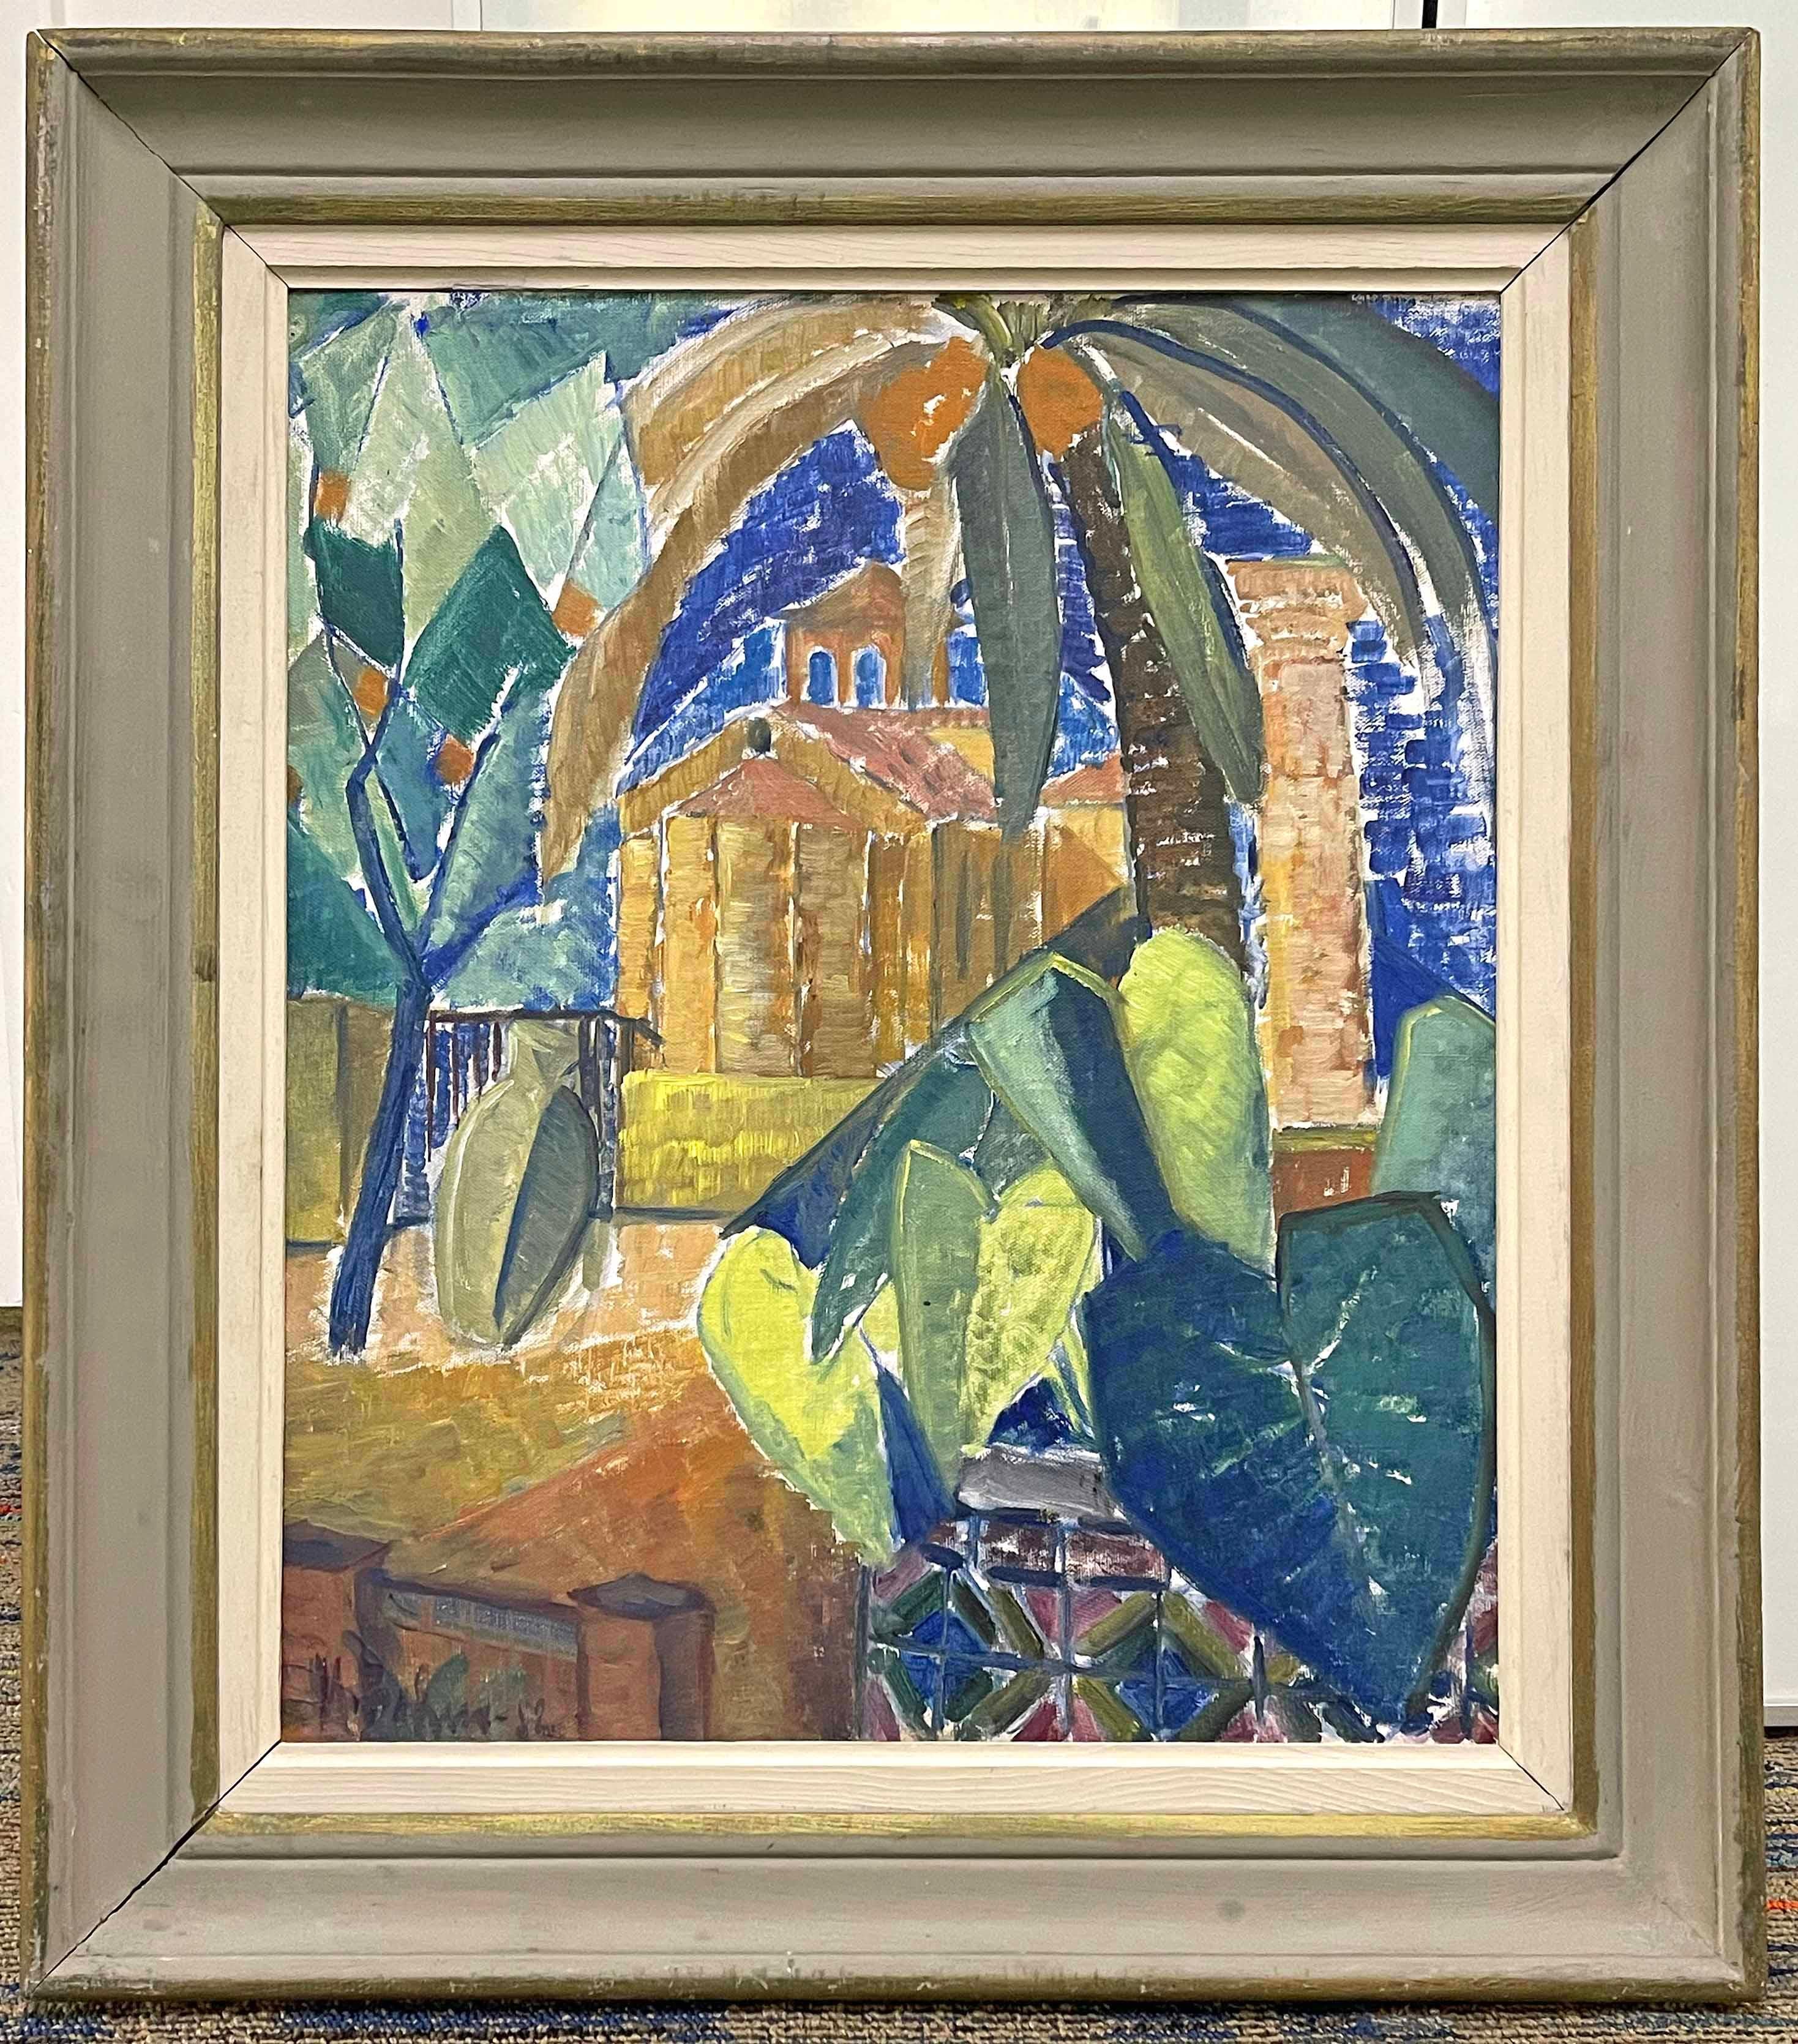 Brillamment peinte dans des tons de bleu, de vert et de brun chaud, cette vue fracturée d'une église et de palmiers le long de la Méditerranée, la tour et l'abside de l'édifice étant représentées dans une lueur dorée, a été peinte par Marthe Bohm en